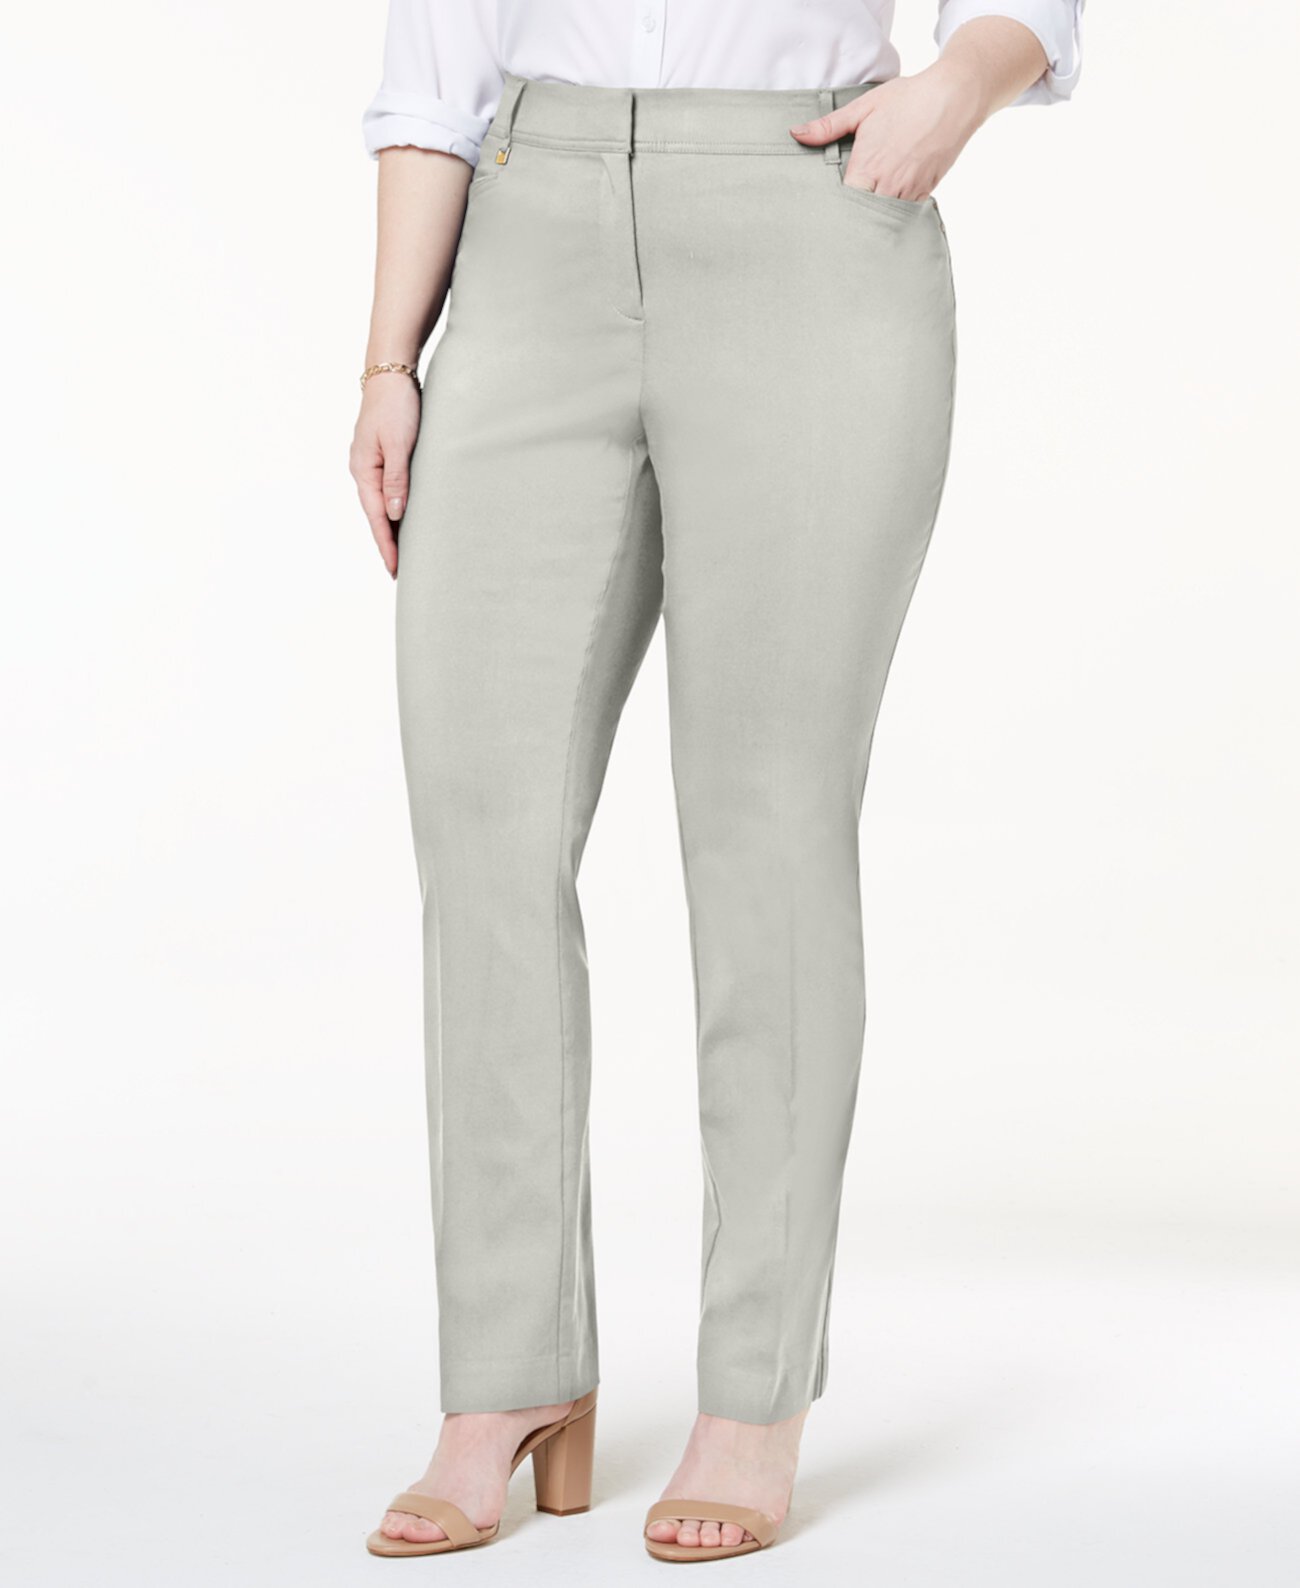 Пышные брюки большого и маленького размера с контролем живота, созданные для Macy's J&M Collection